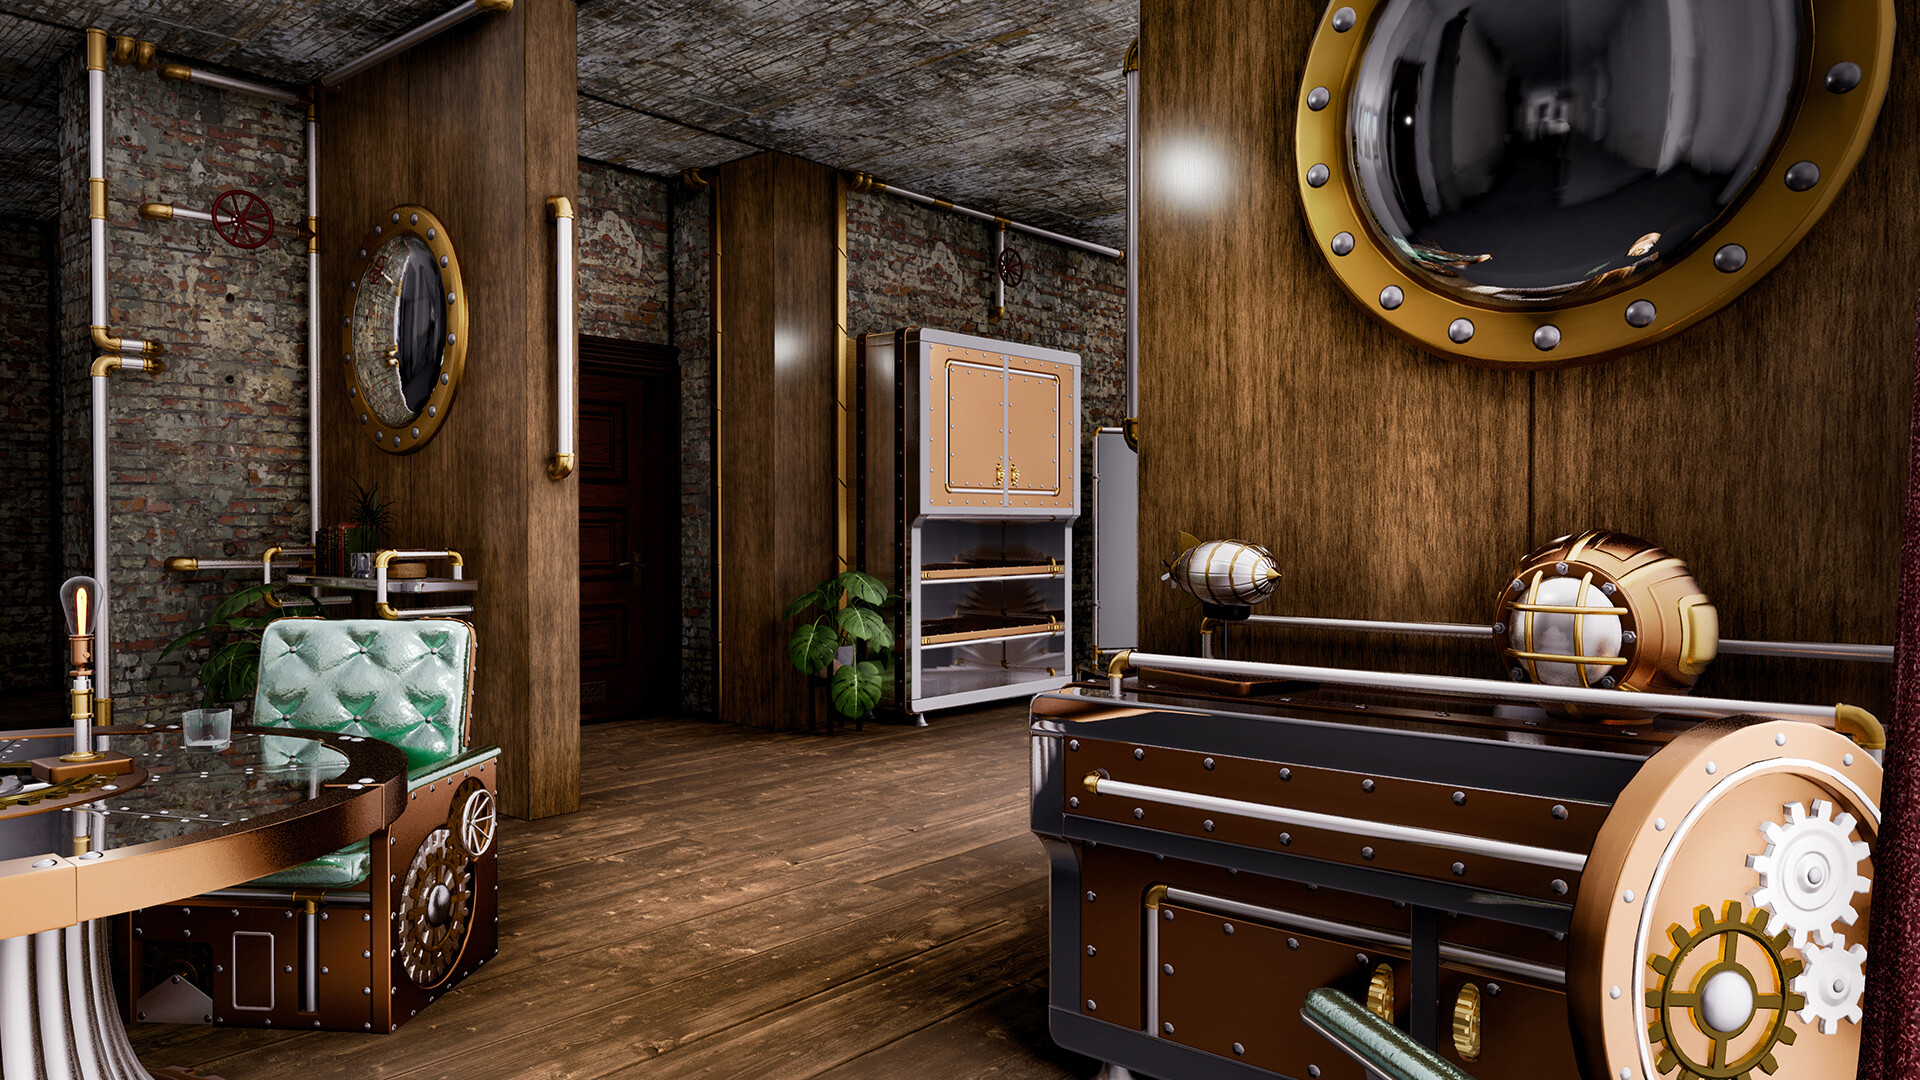 Hotel Renovator - Steampunk DLC * STEAM RU ⚡ AUTO 💳0%